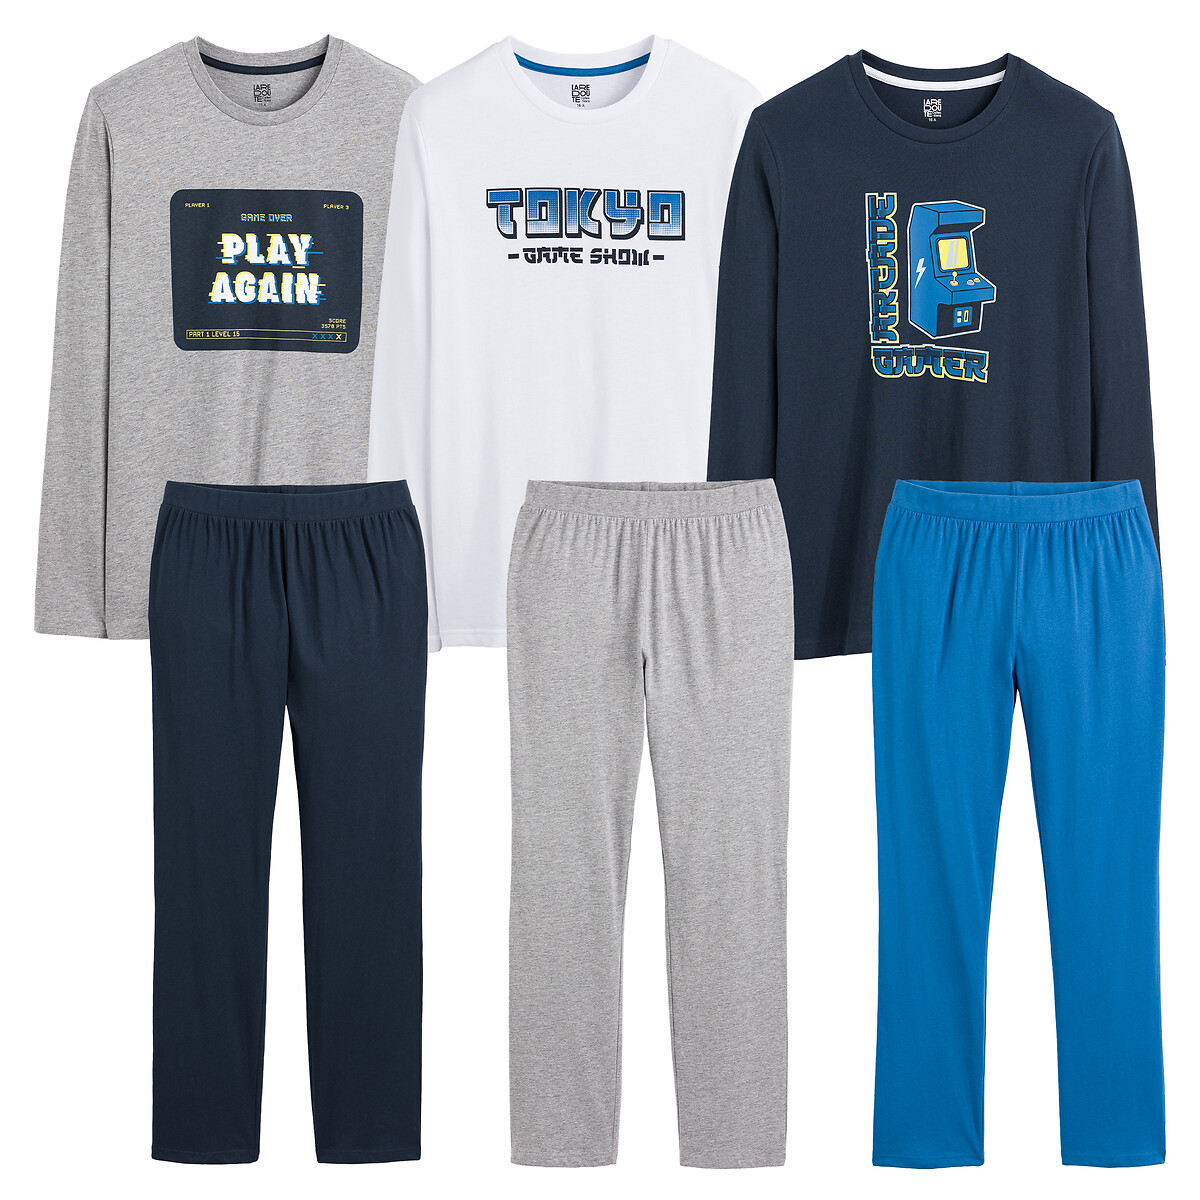 Комплект из трех пижам принт аркадные игры 14 лет - 162 см синий комплект из трех пижам с шортами анималистический принт 18 лет 168 см серый